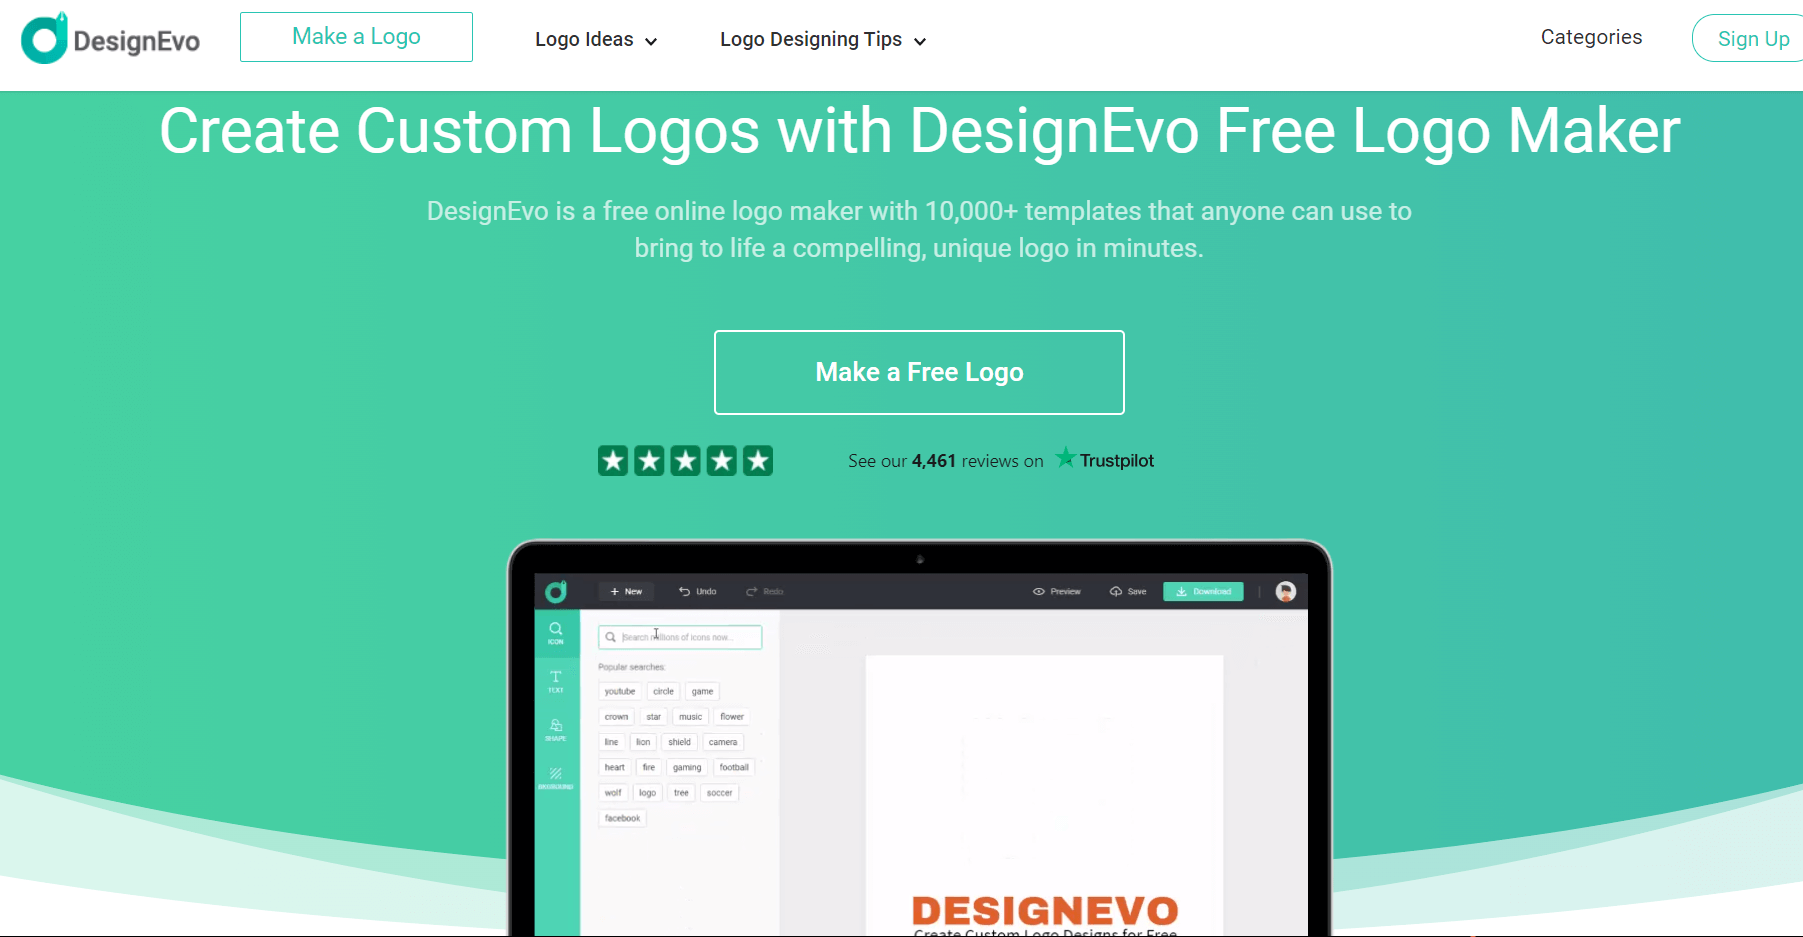 DesignEvo Free Logo Maker Review